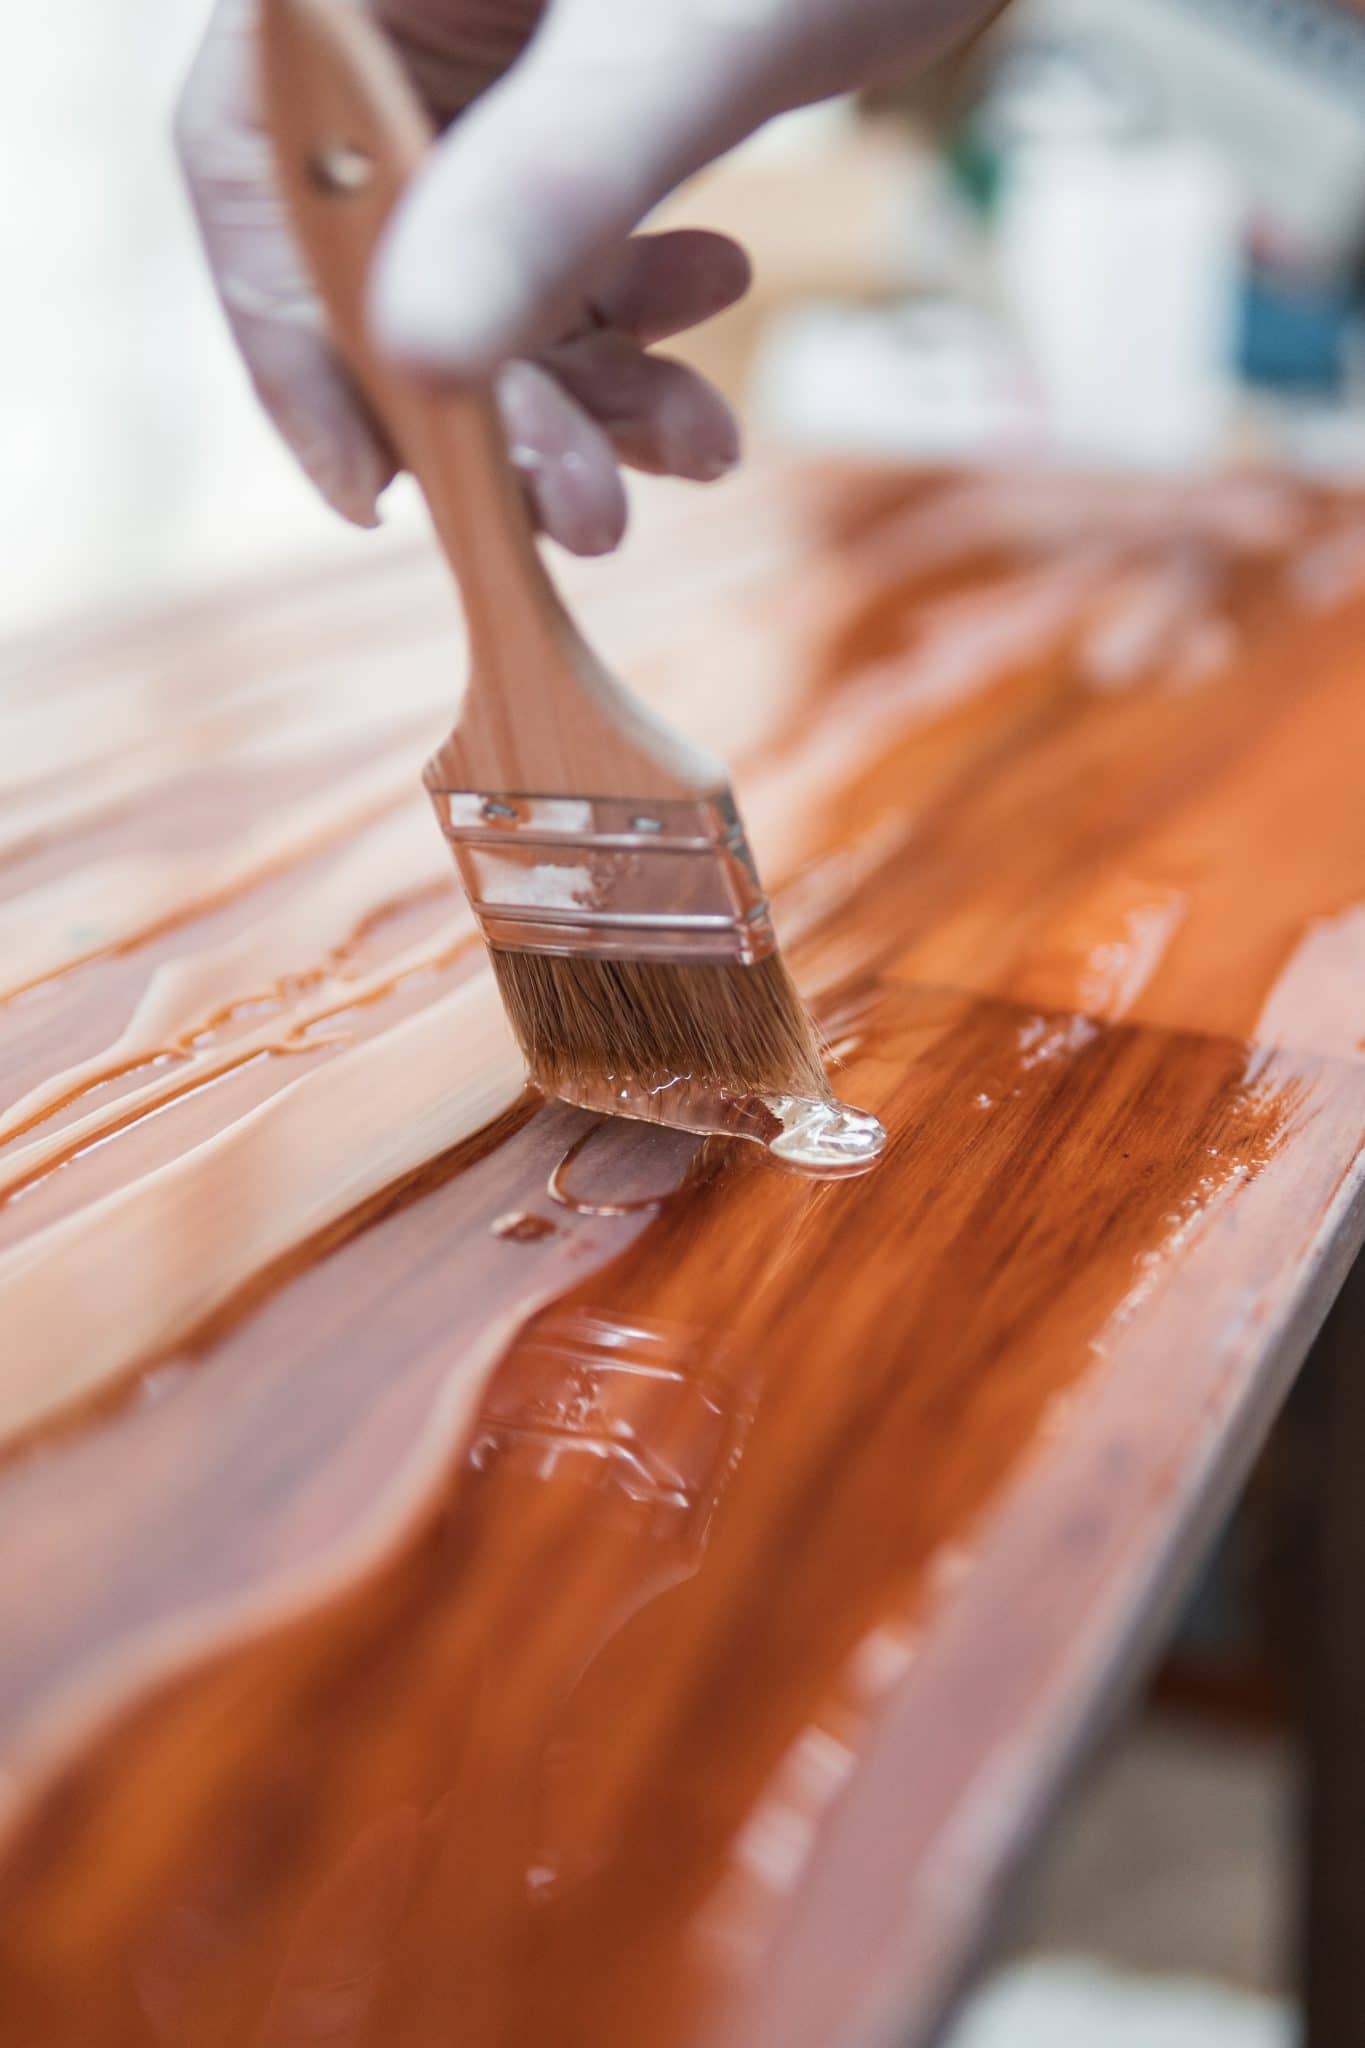 Quelle peinture choisir pour repeindre un meuble en bois? - Colorantic